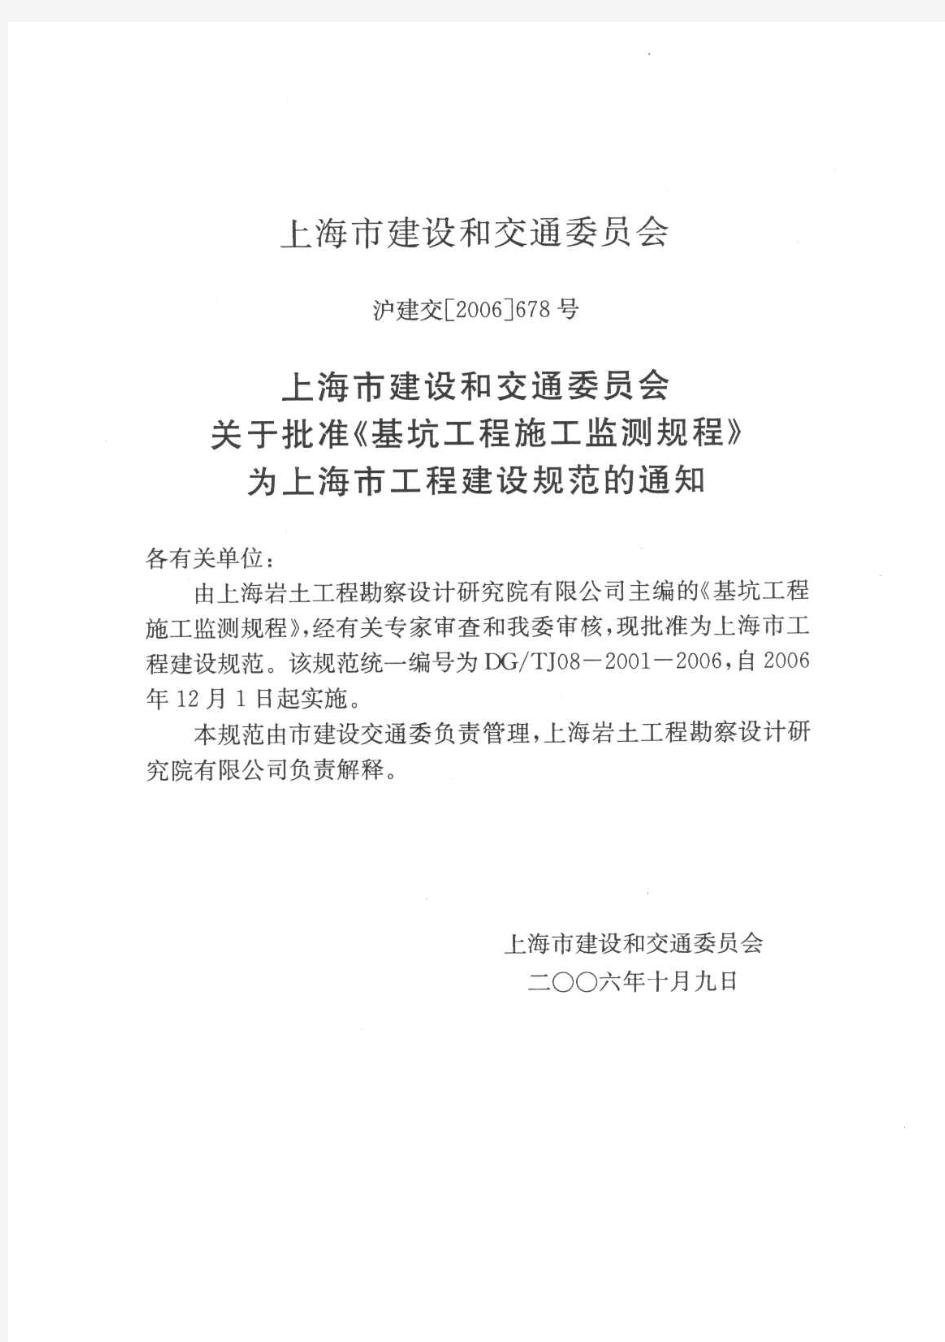 【上海市工程建设规范】基坑工程施工监测规程(DGTJ08-2001-2006)